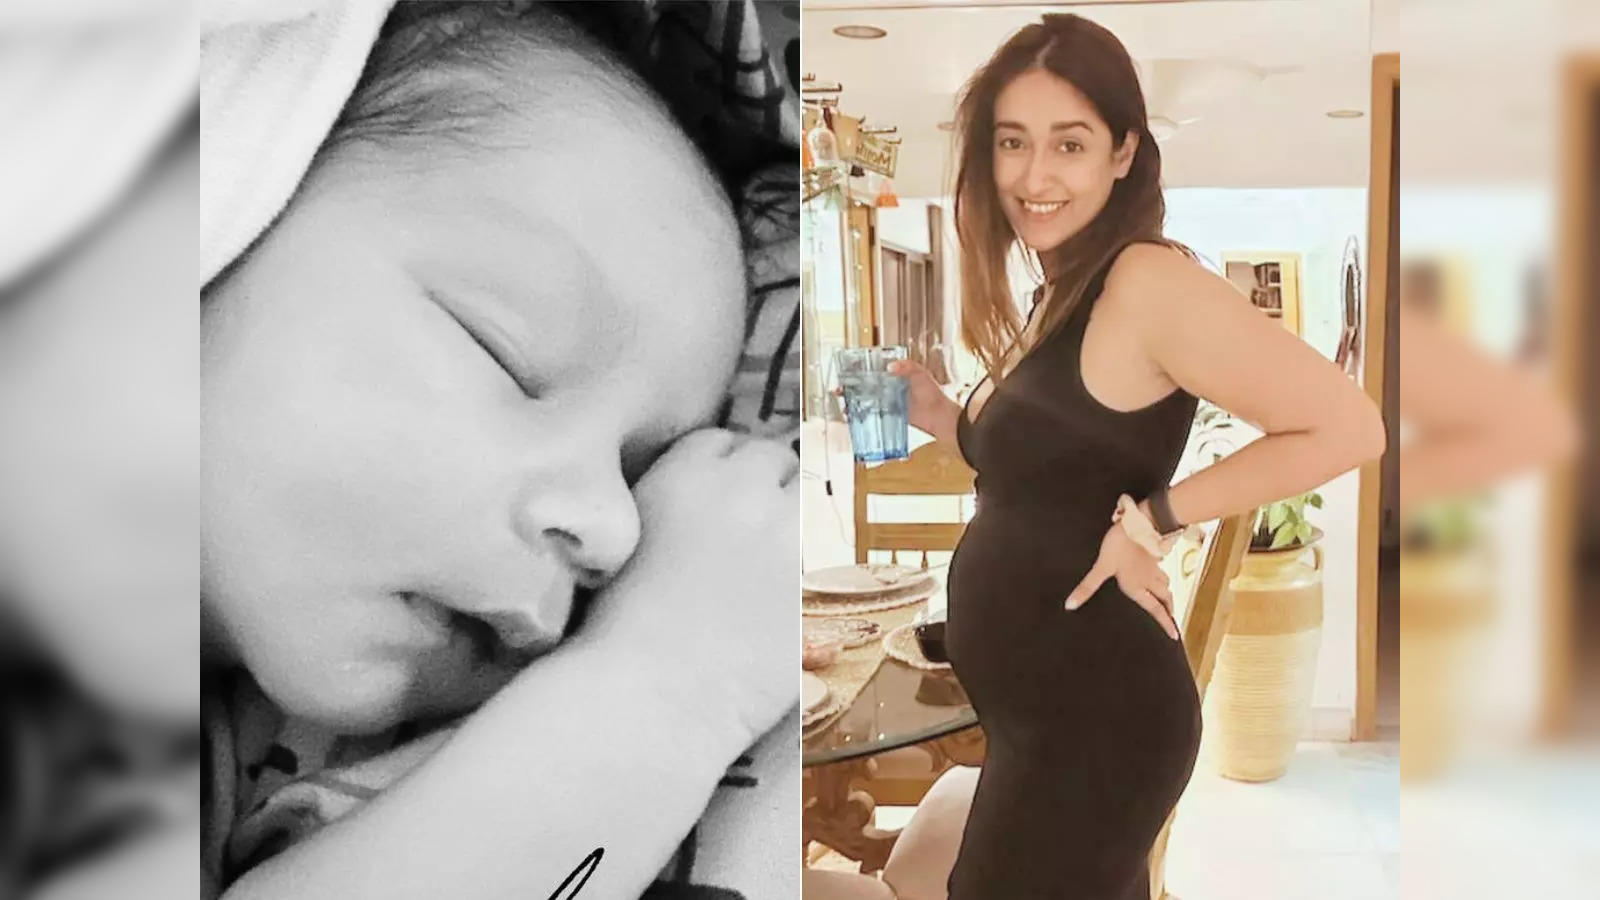 Somol Baby Xxx - ileana: Ileana D' Cruz becomes a mom! 'Barfi' star welcomes first child, a  baby boy - The Economic Times